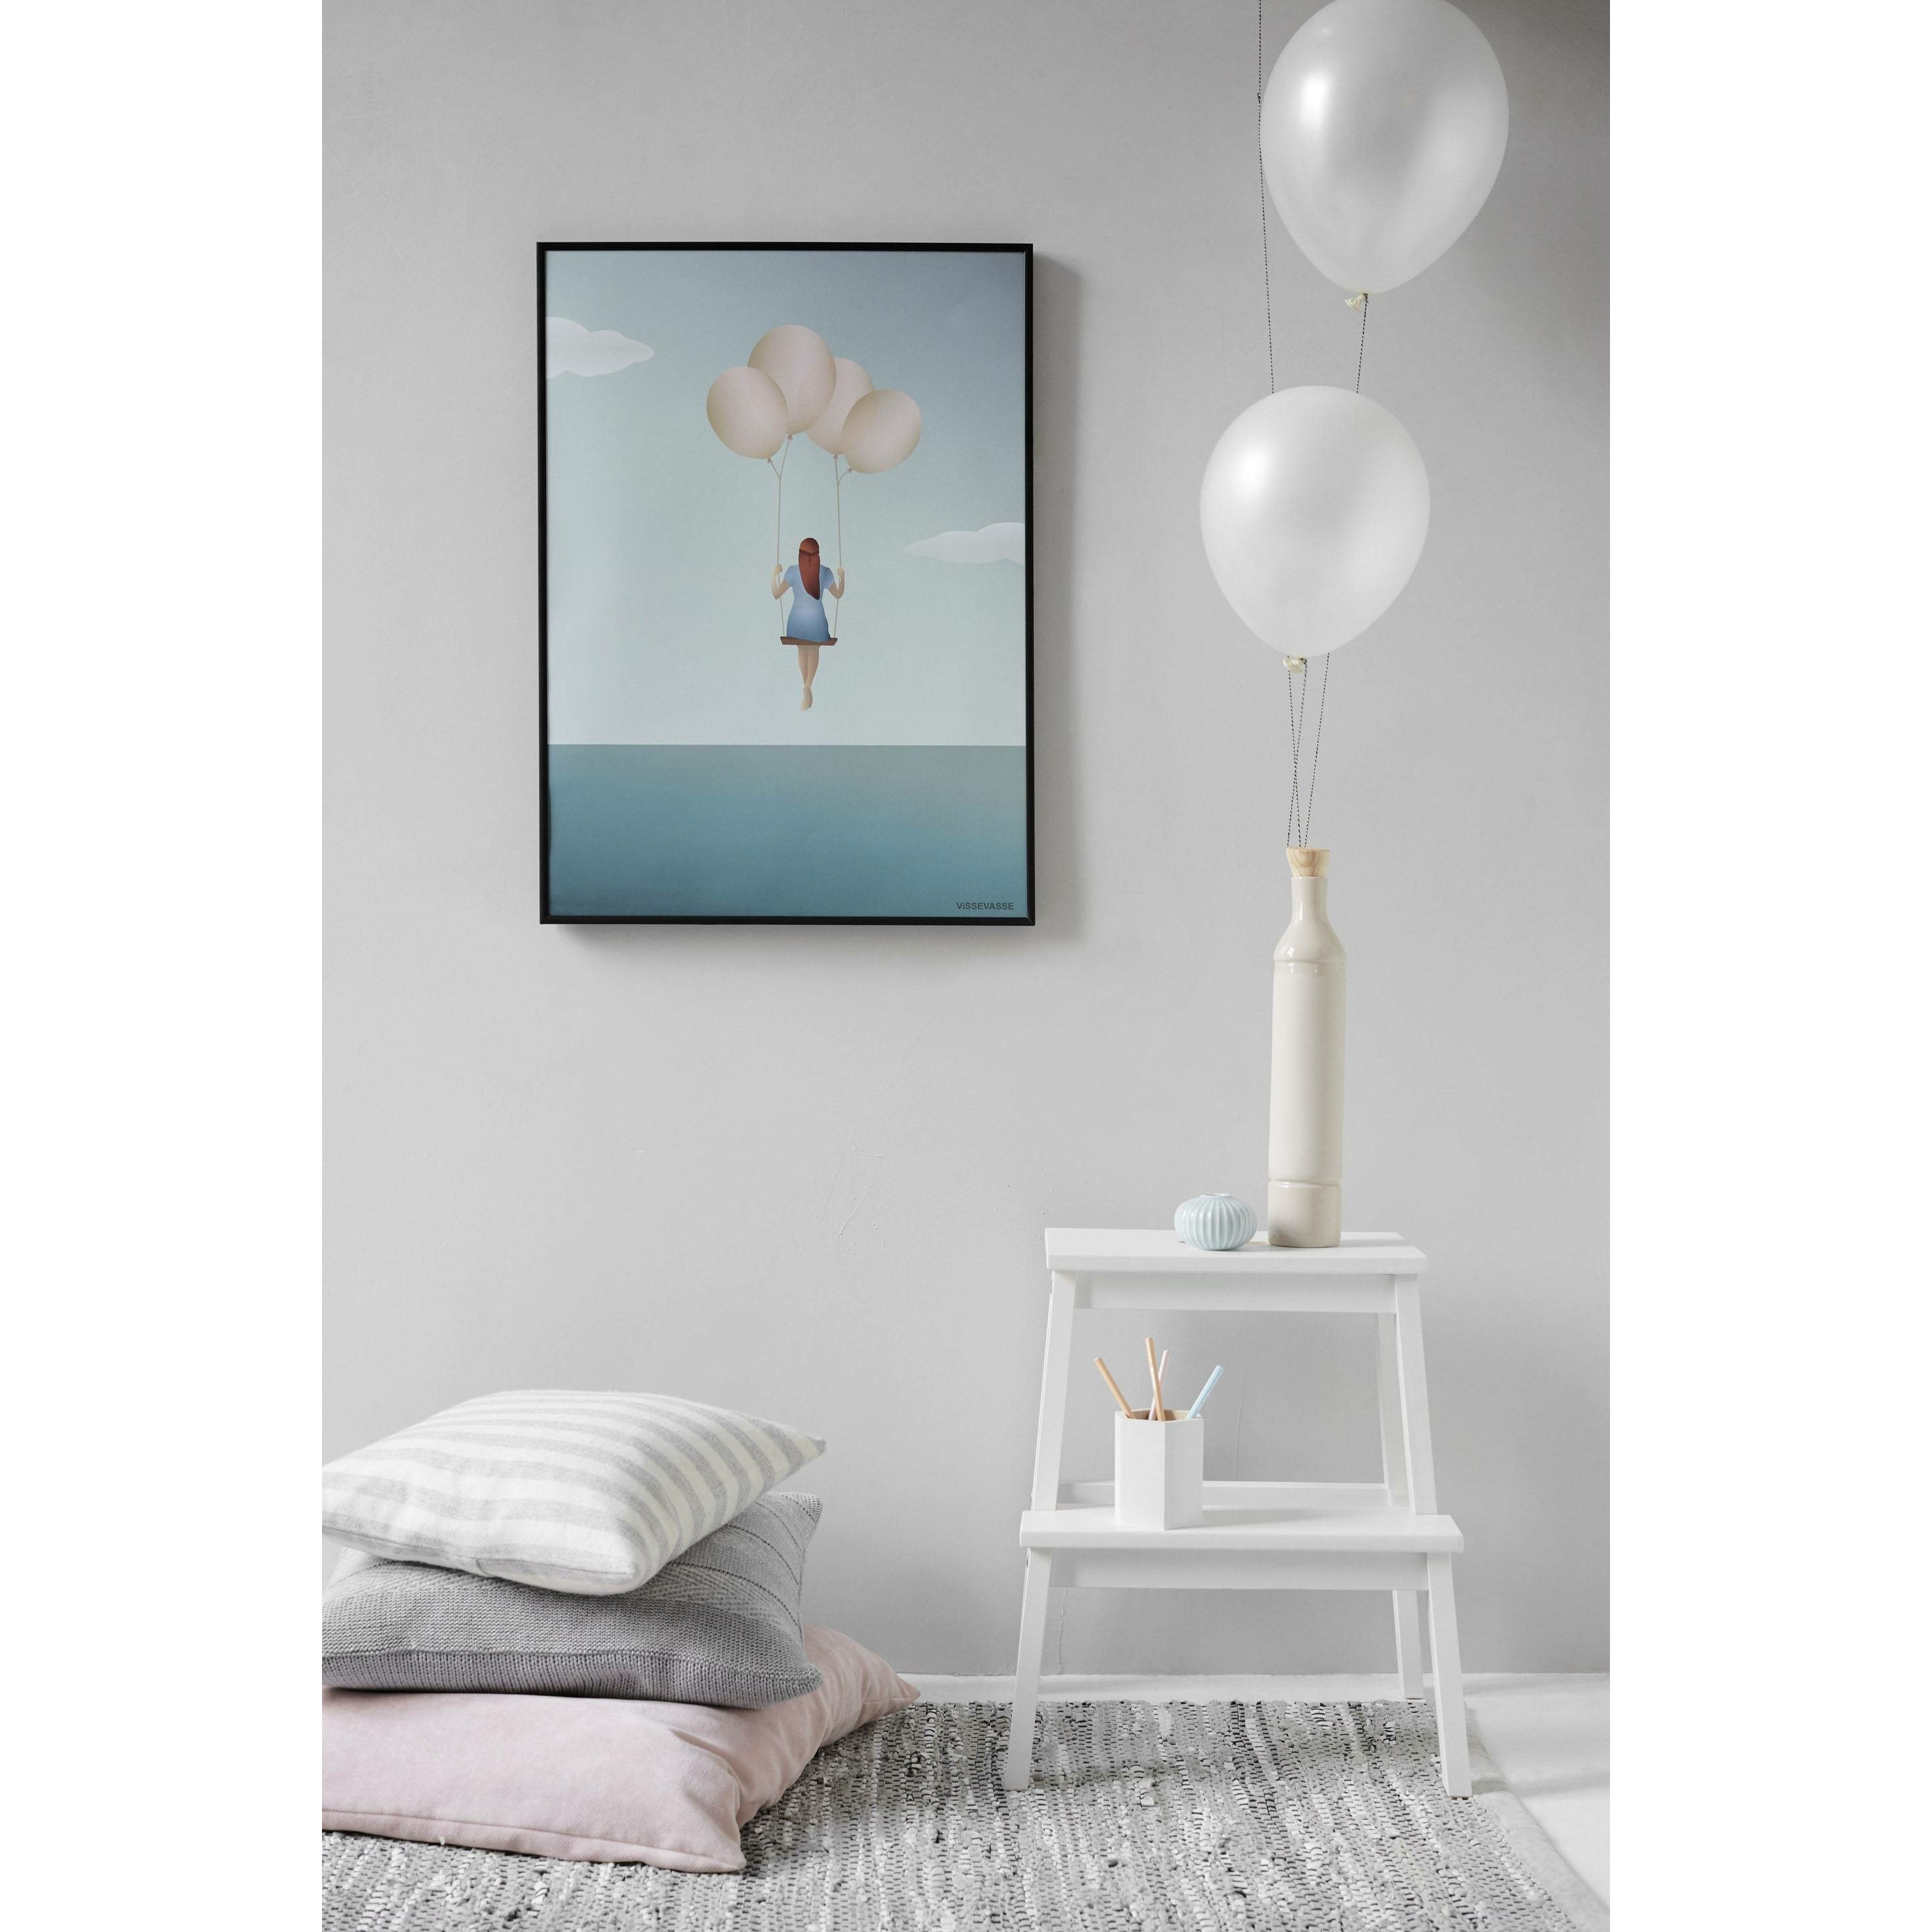 Vissevasse Ballon Dream Poster, 70 x100 cm